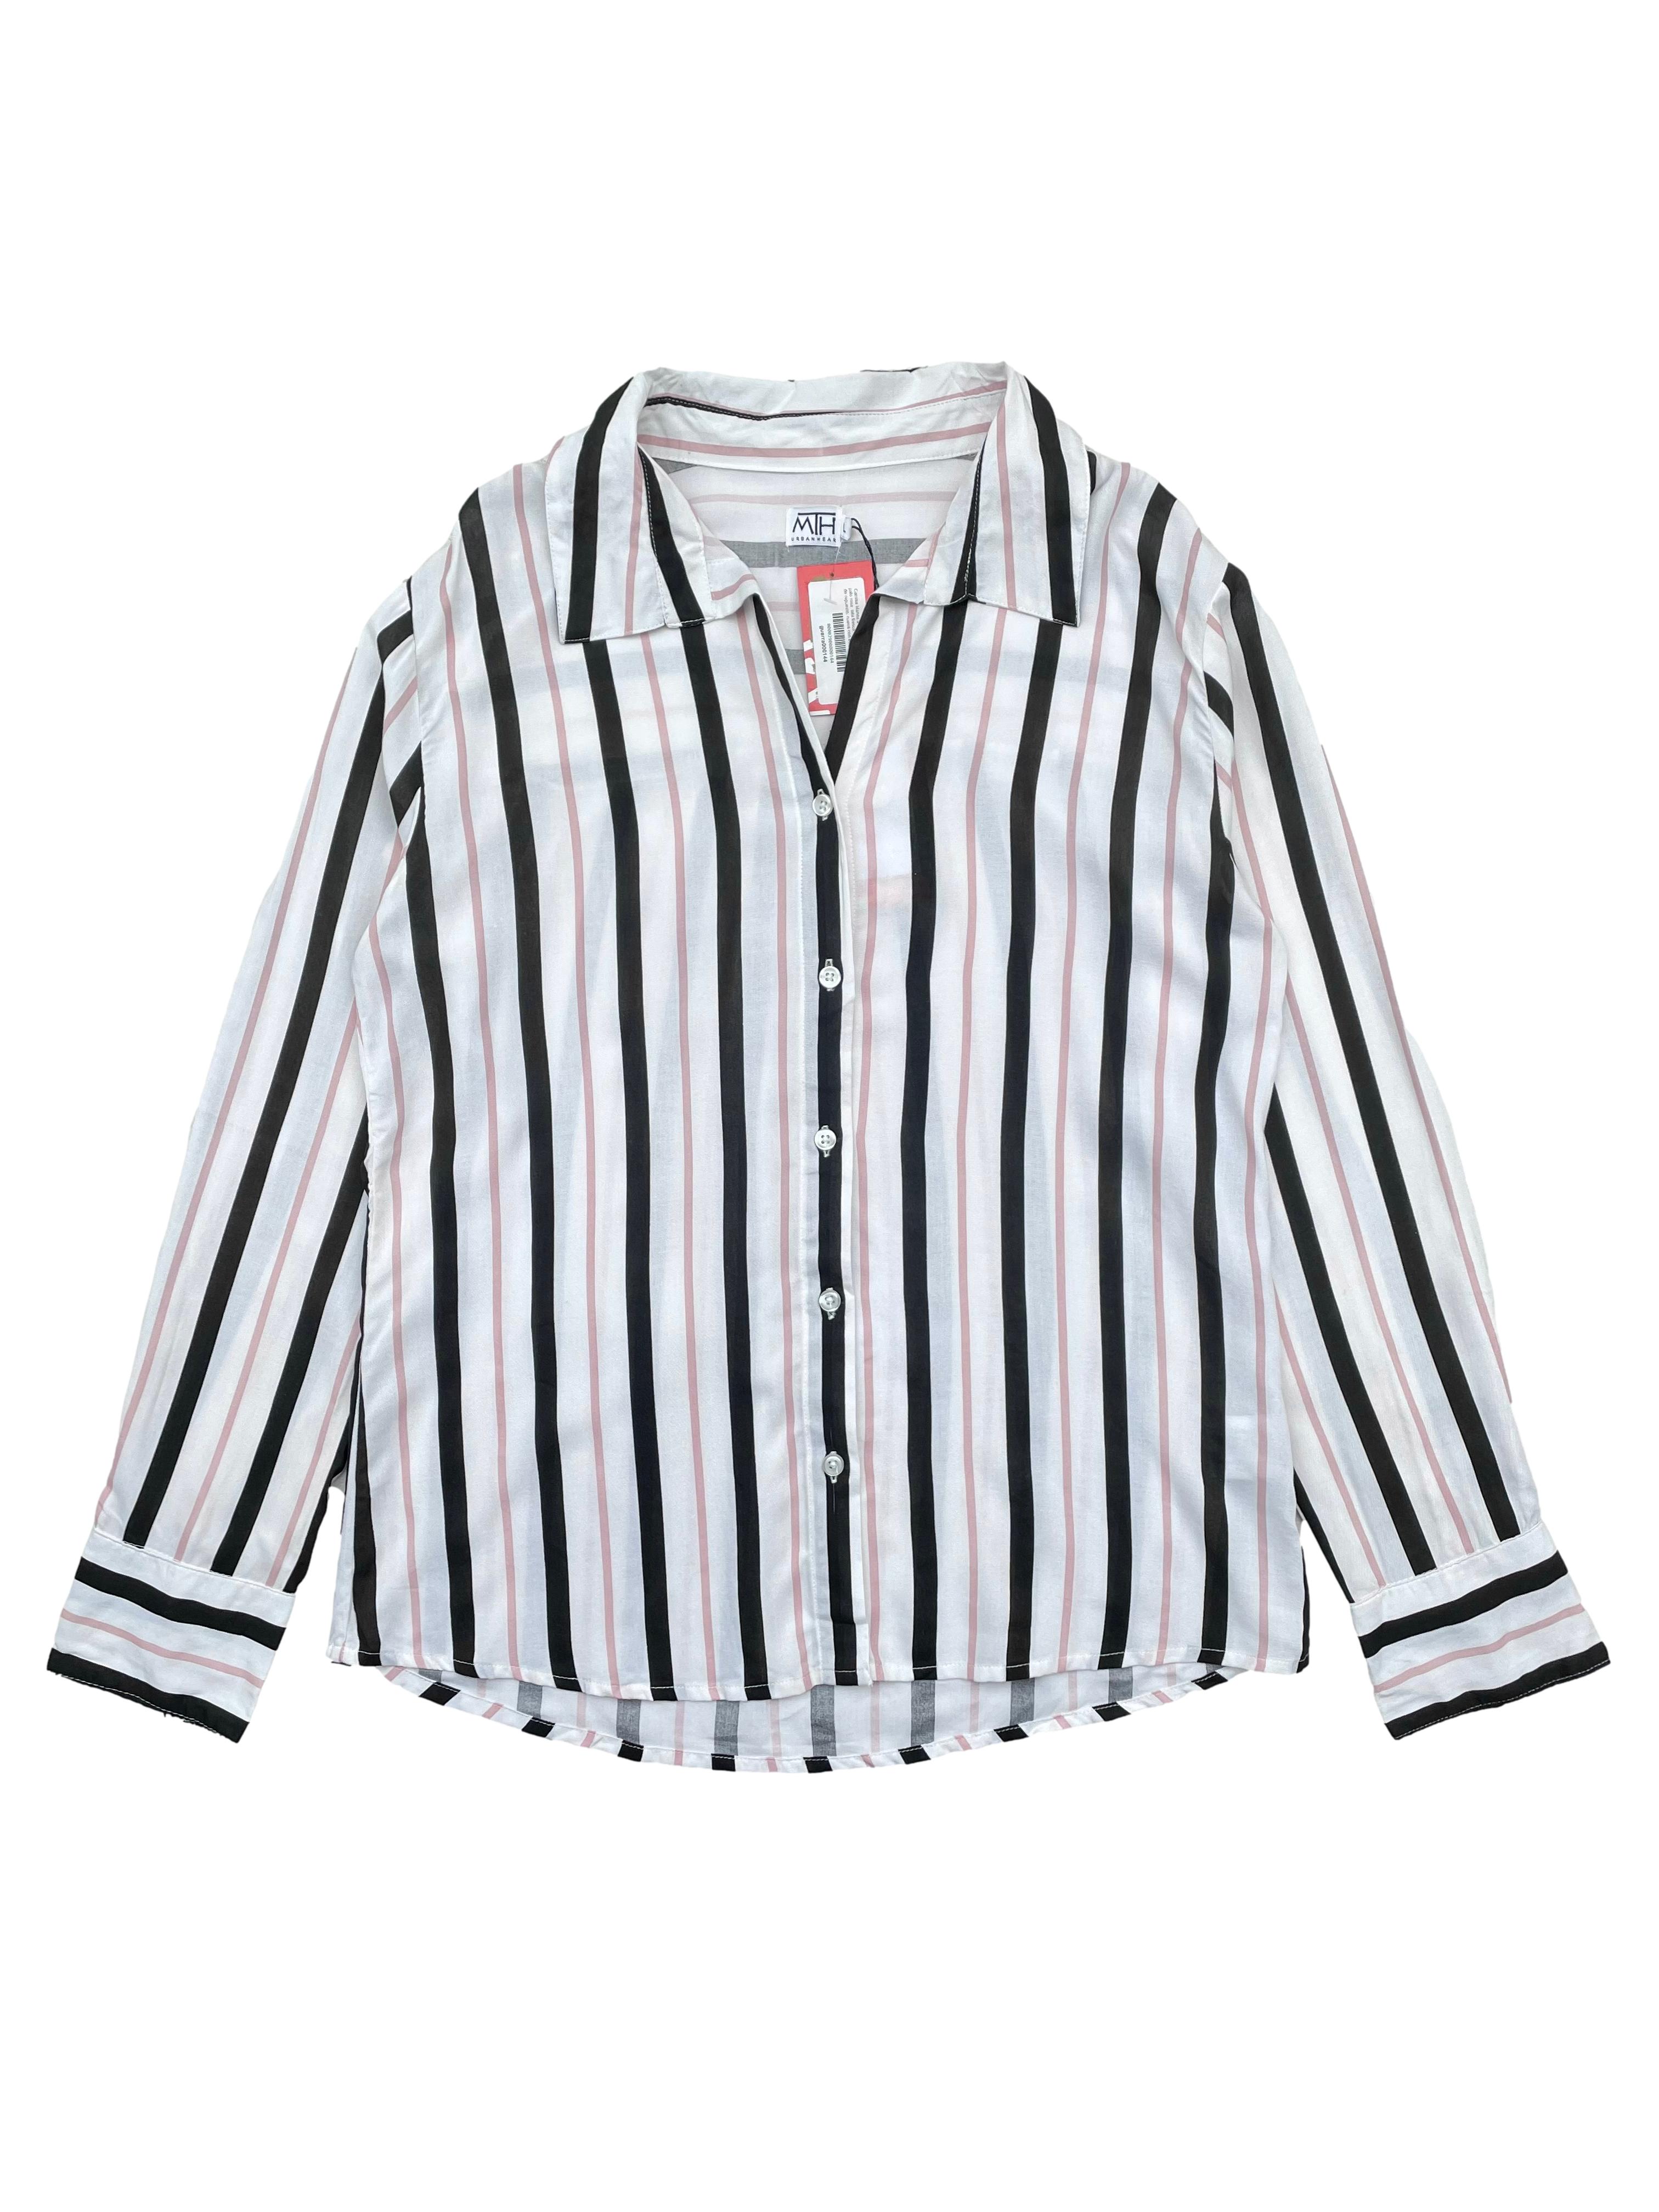 Camisa blanca a rayas negras y palo rosa, tela fresca, tiene botón de repuesto. Nueva con etiqueta. Largo 72cm. | Traperas